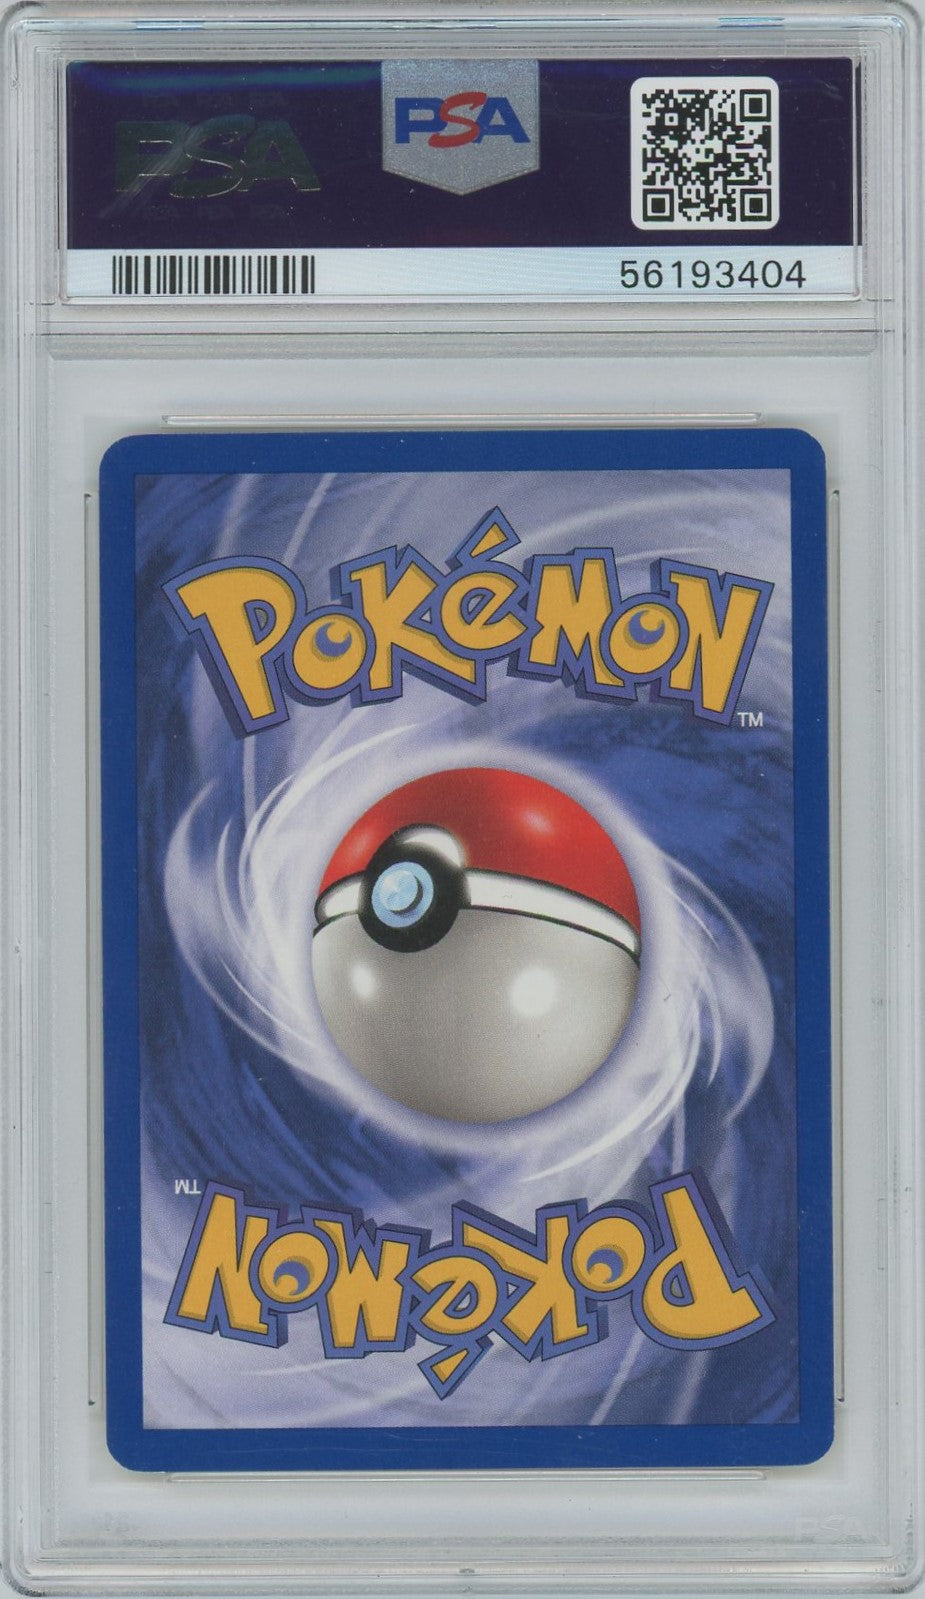 PSA Gem Mint 10- 2000 Pokémon - Pokémon Rocket - Magnemite - 1st Edition